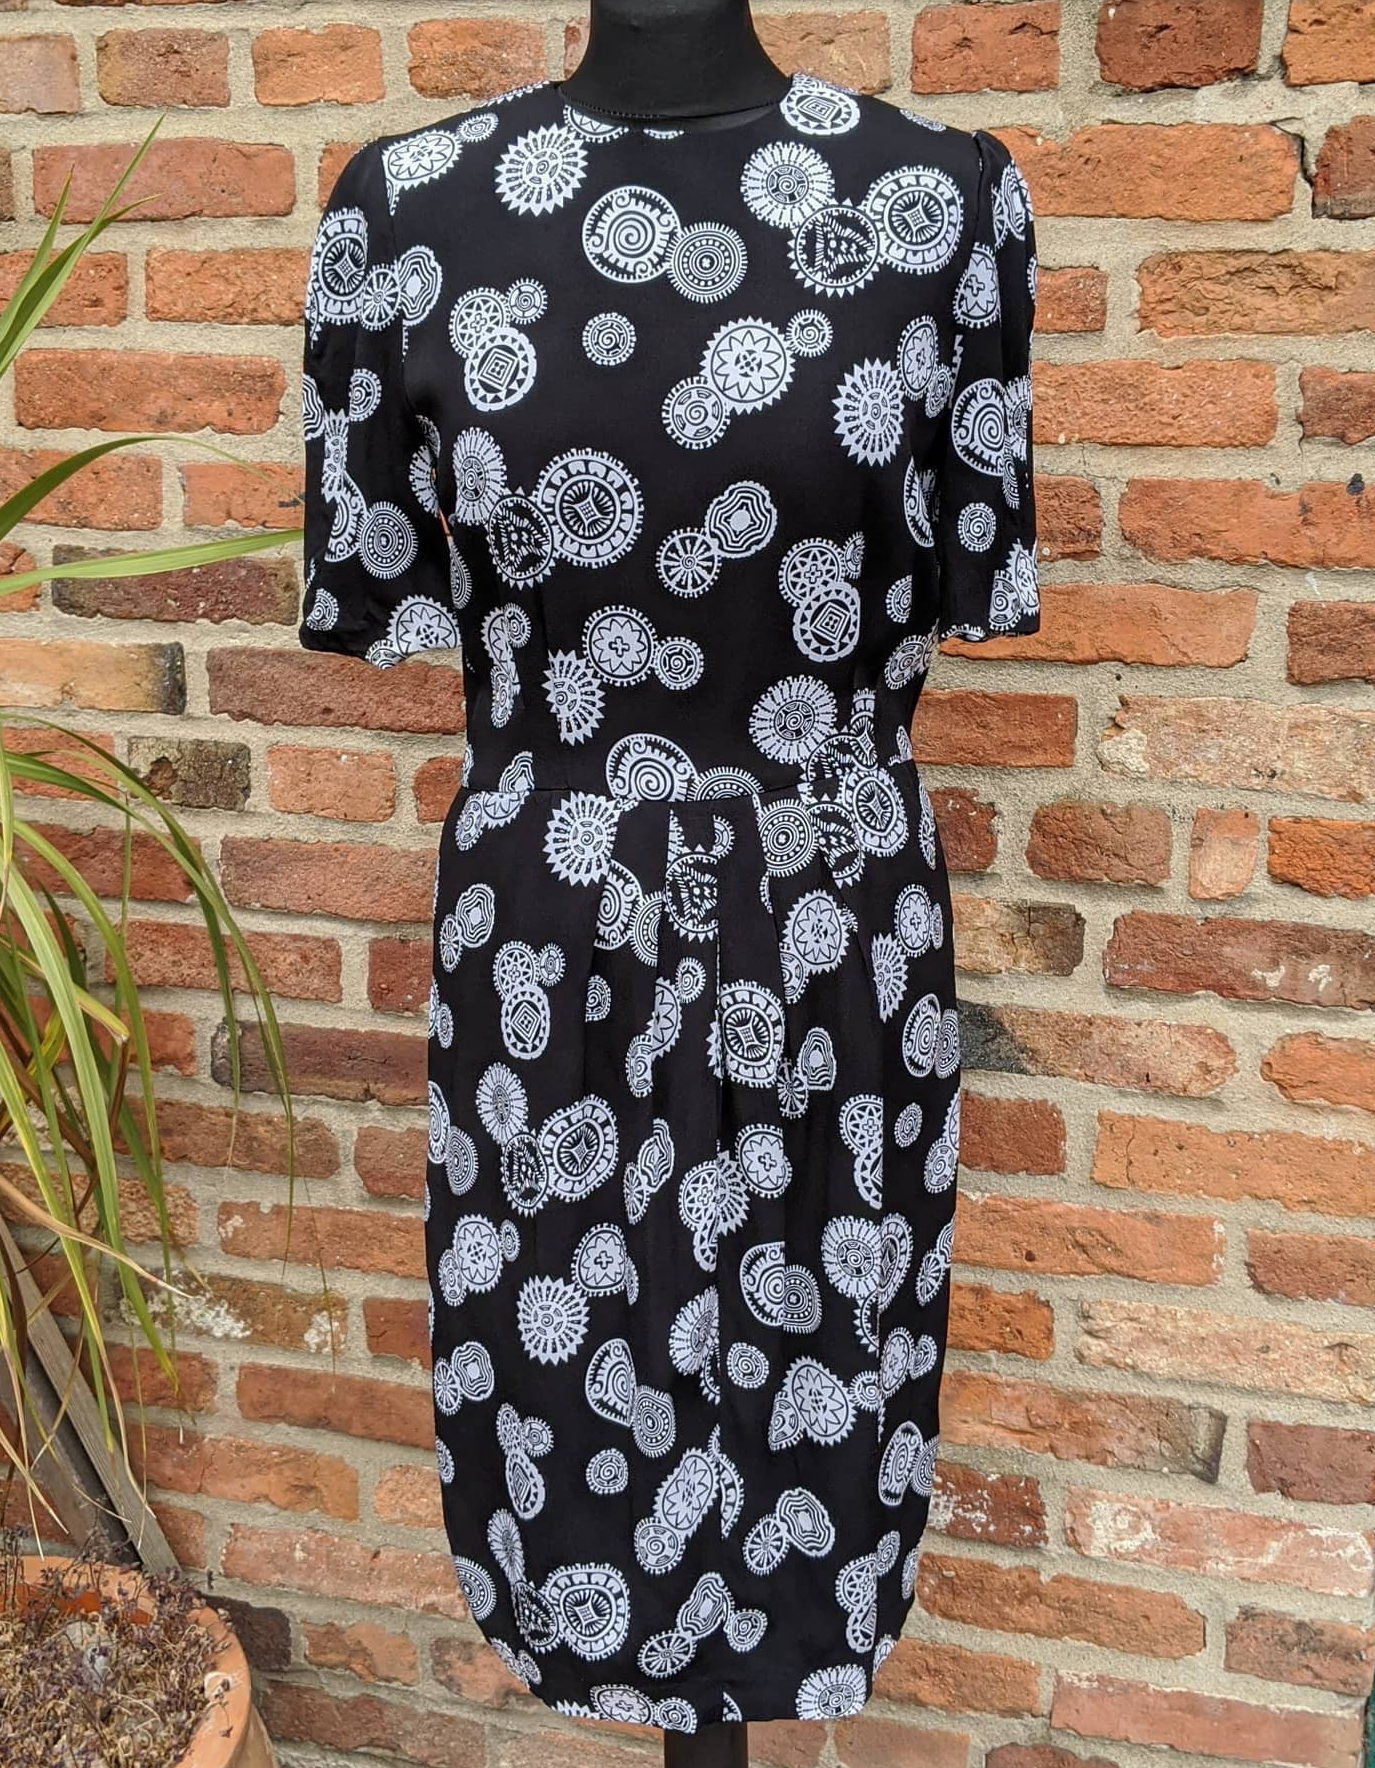 Vintage Liz Claiborne dress size 12.